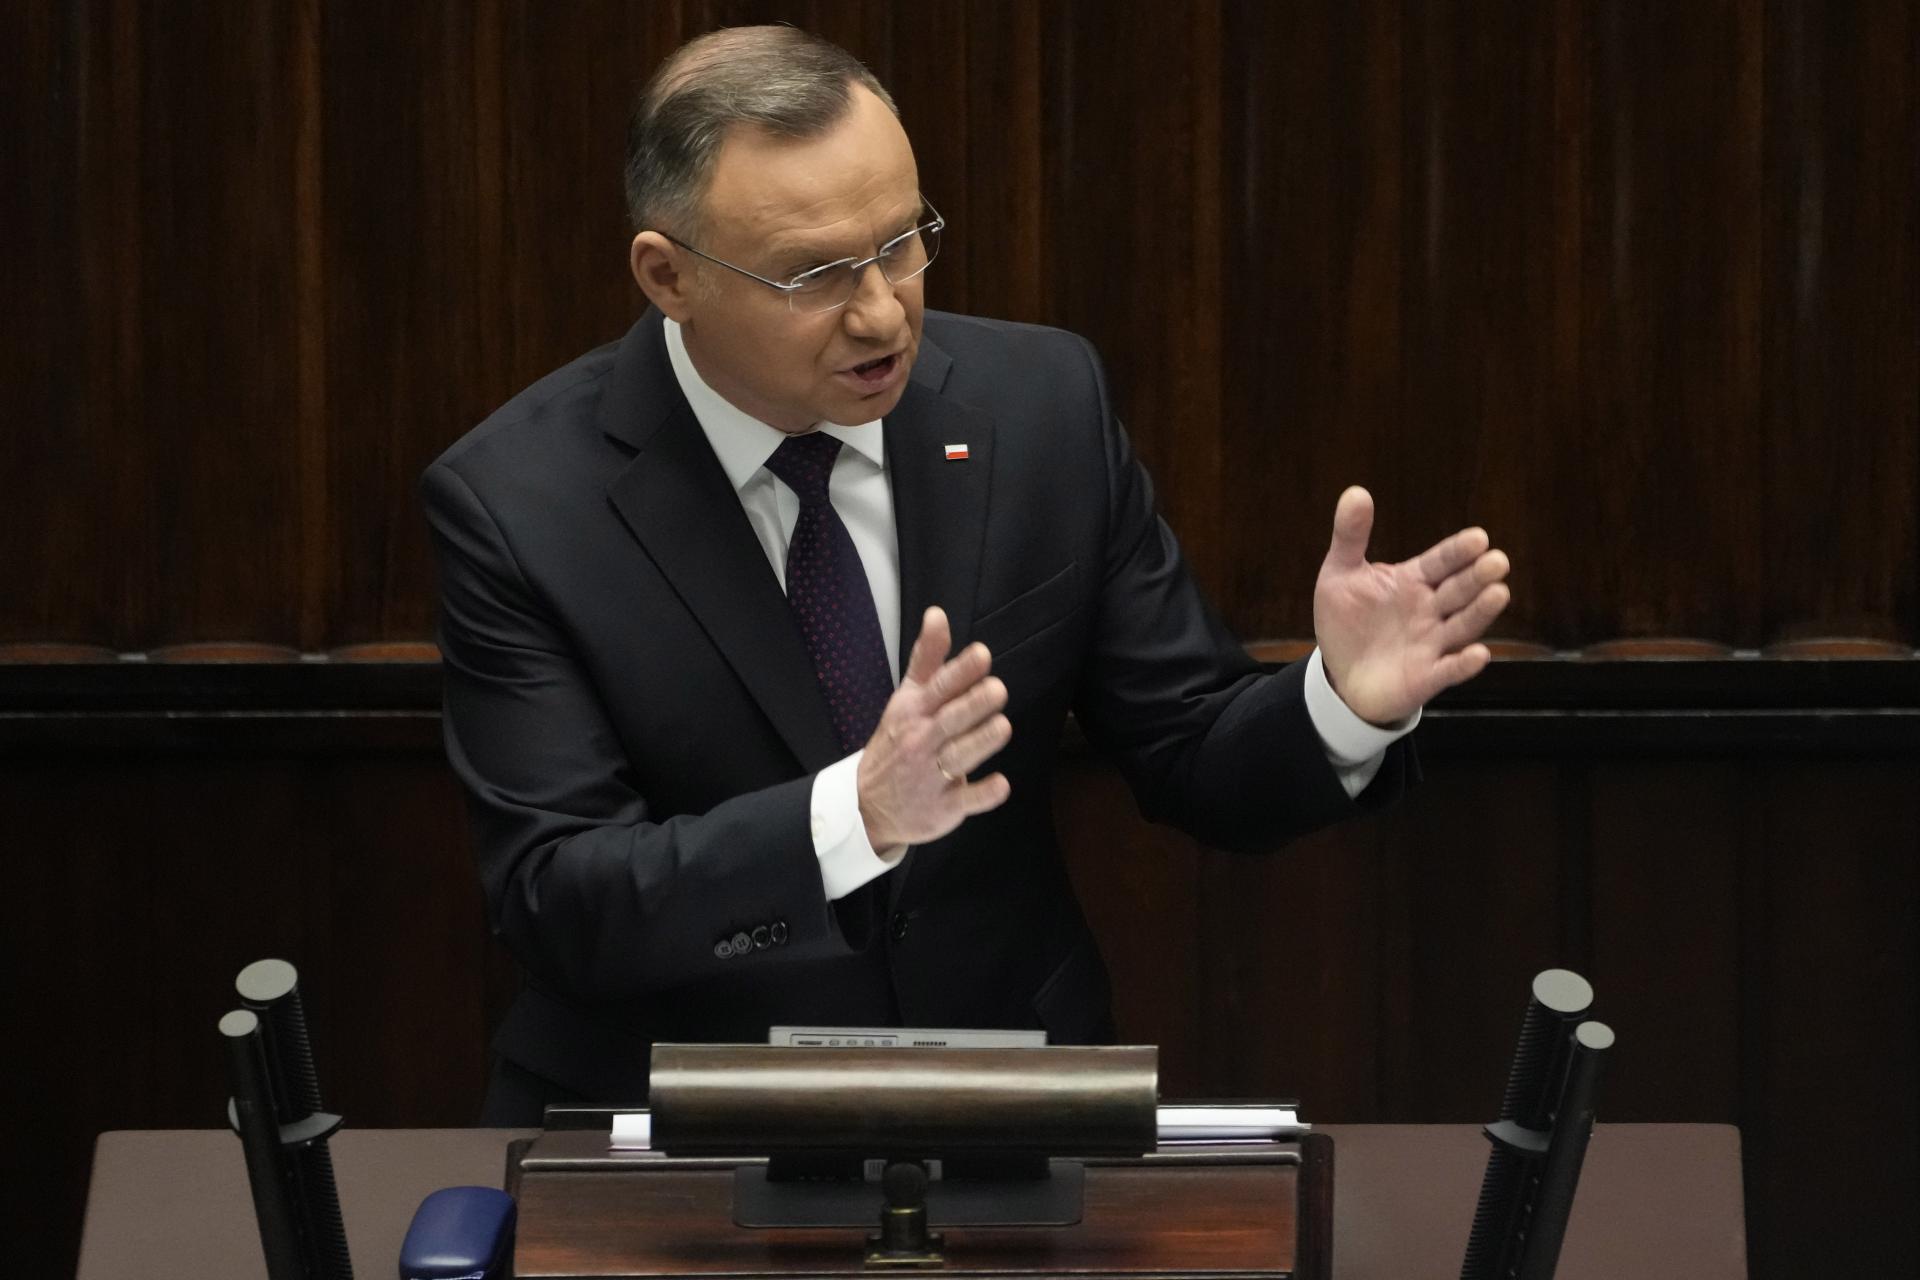 Poľská vládnucá strana PiS čelí odvete, prezident kritizuje jej slabé zastúpenie v parlamente